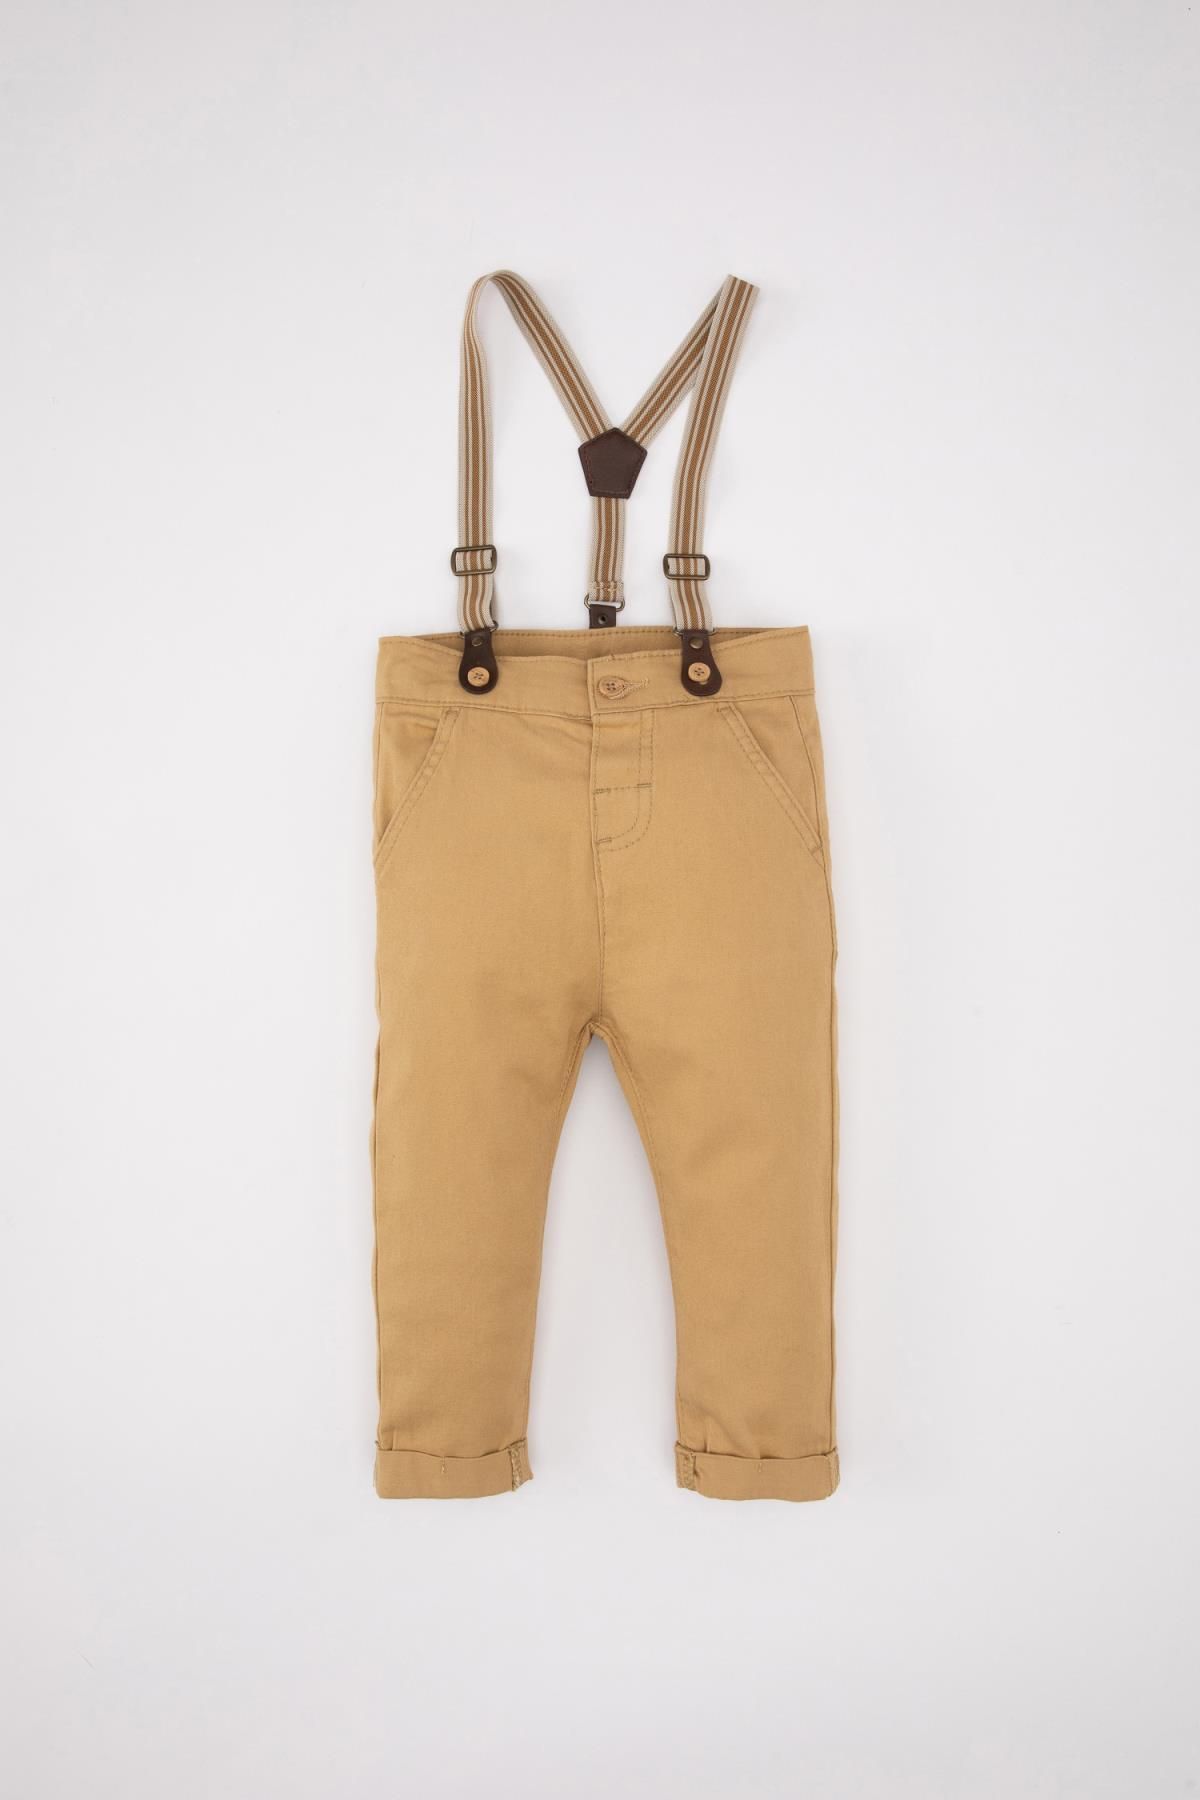 Defacto Erkek Bebek Düz Paça Gabardin Pantolon Pantolon Askısı 2'li Takım B9246a524sp